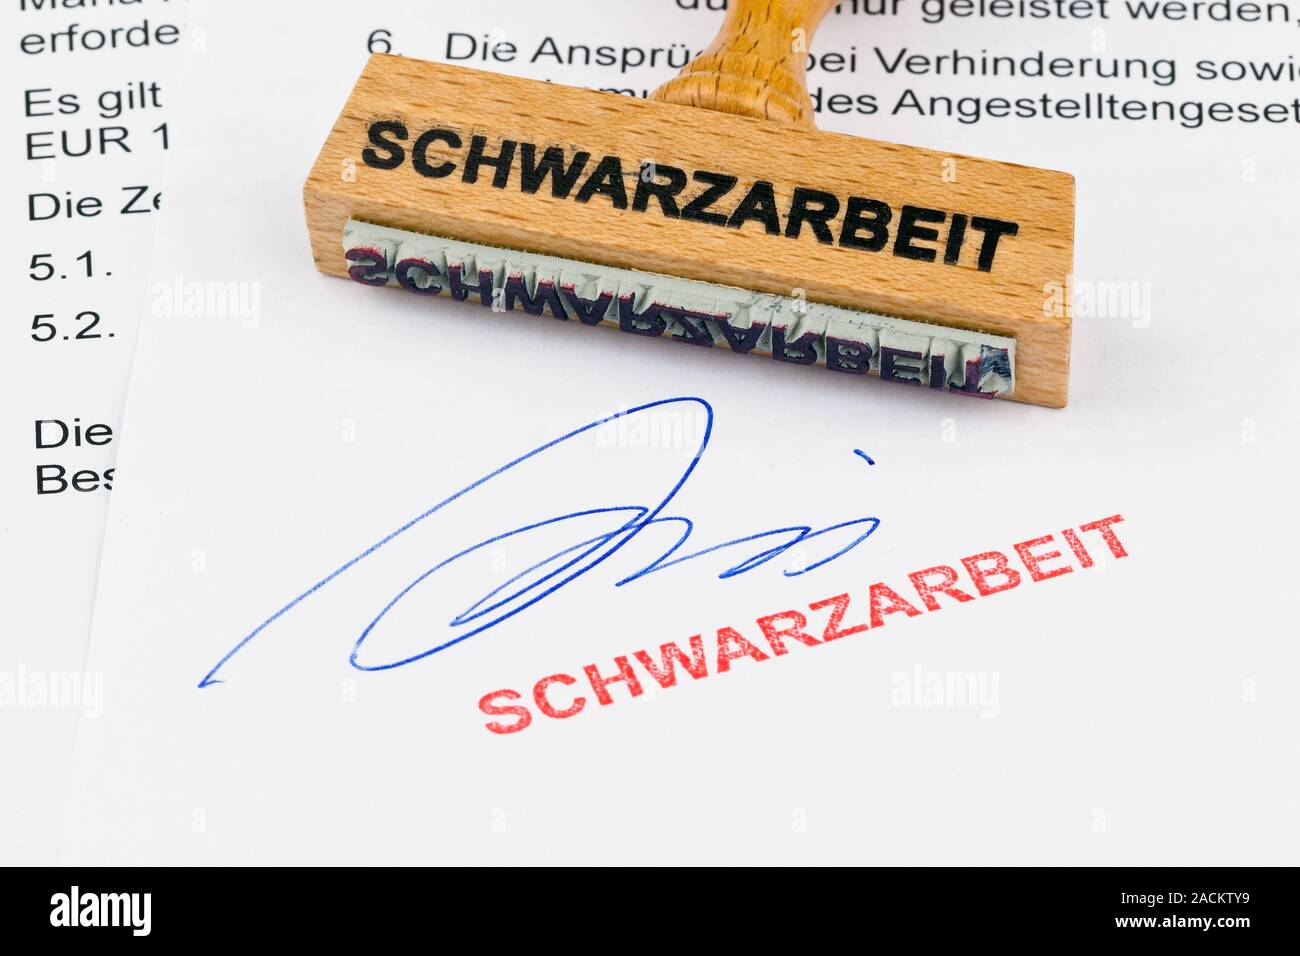 Wooden stamp on document: Schwarzarbeit Stock Photo